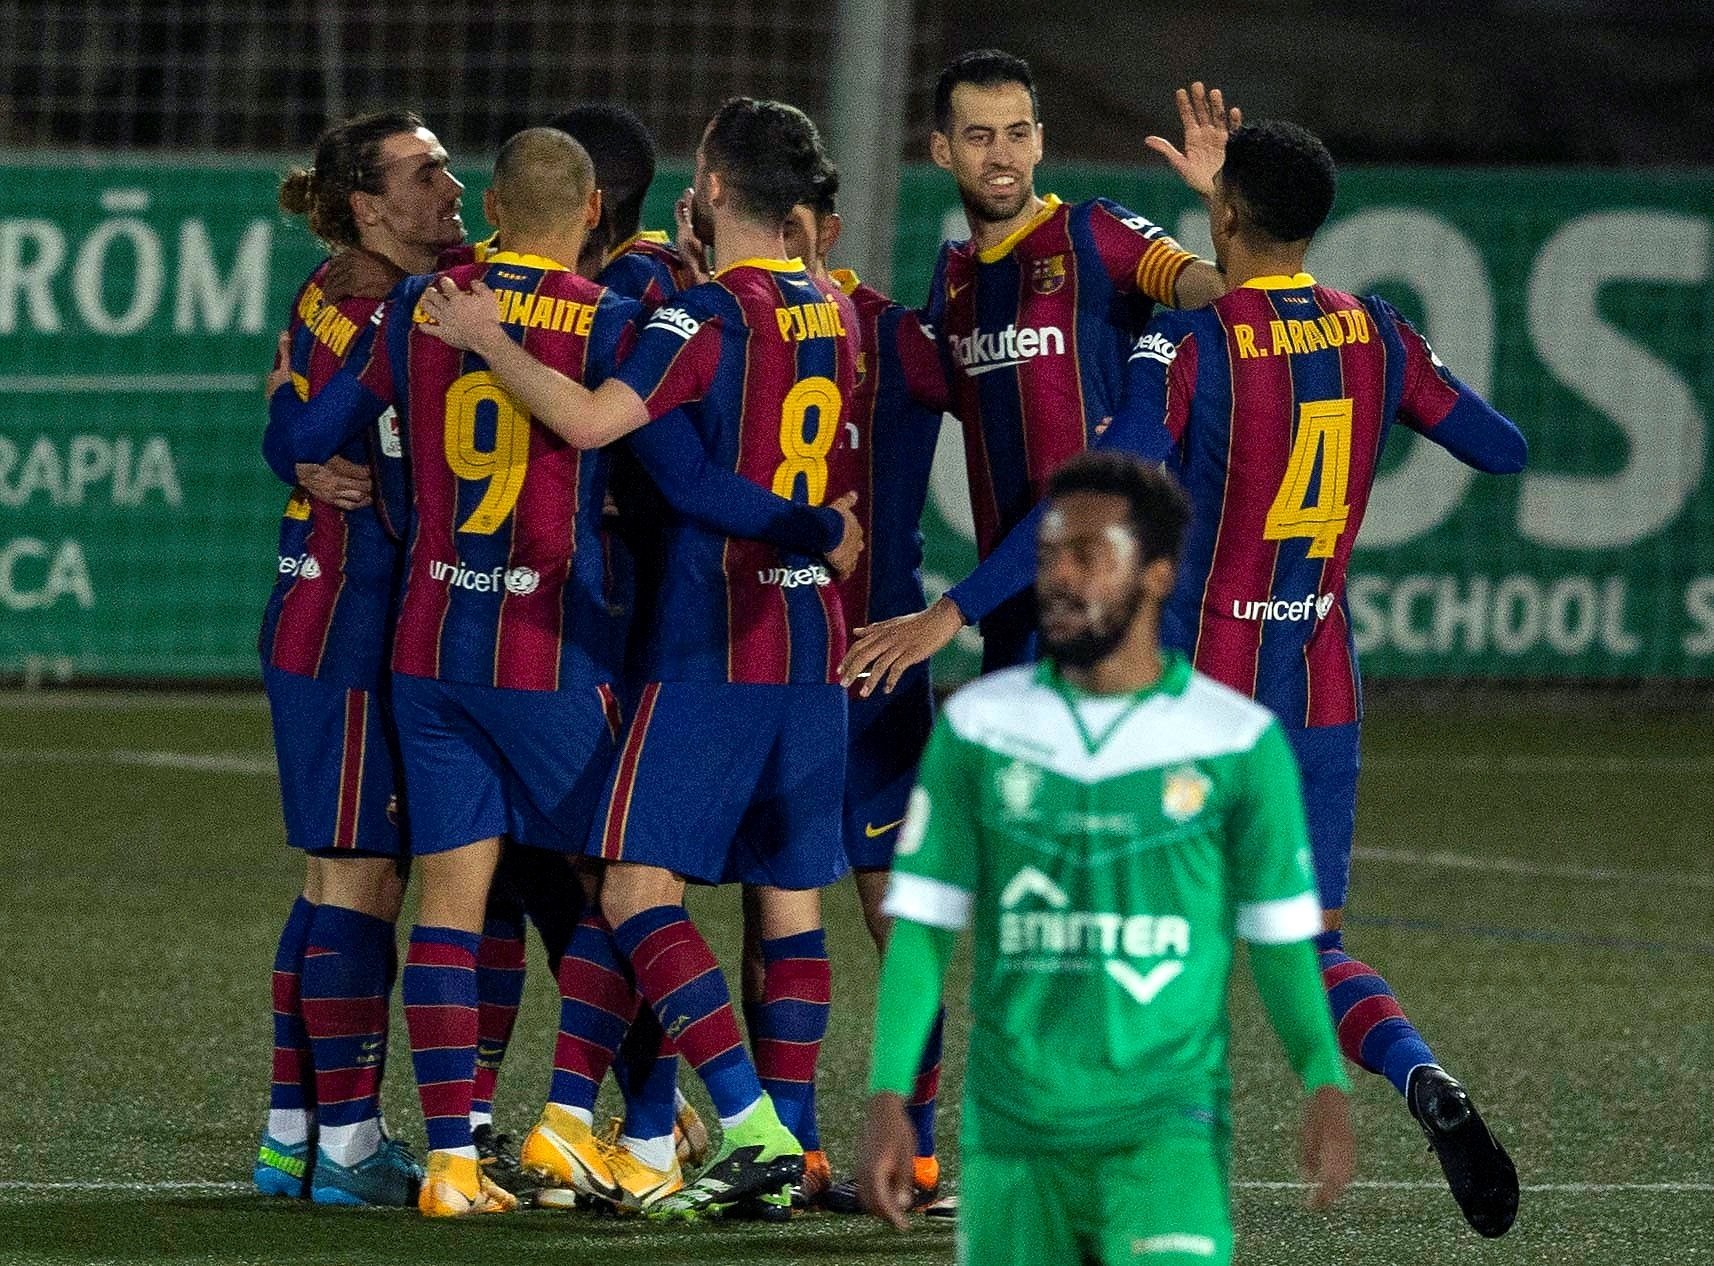 El Rayo Vallecano, el nou escull del Barça del recuperat Messi a la Copa del Rei